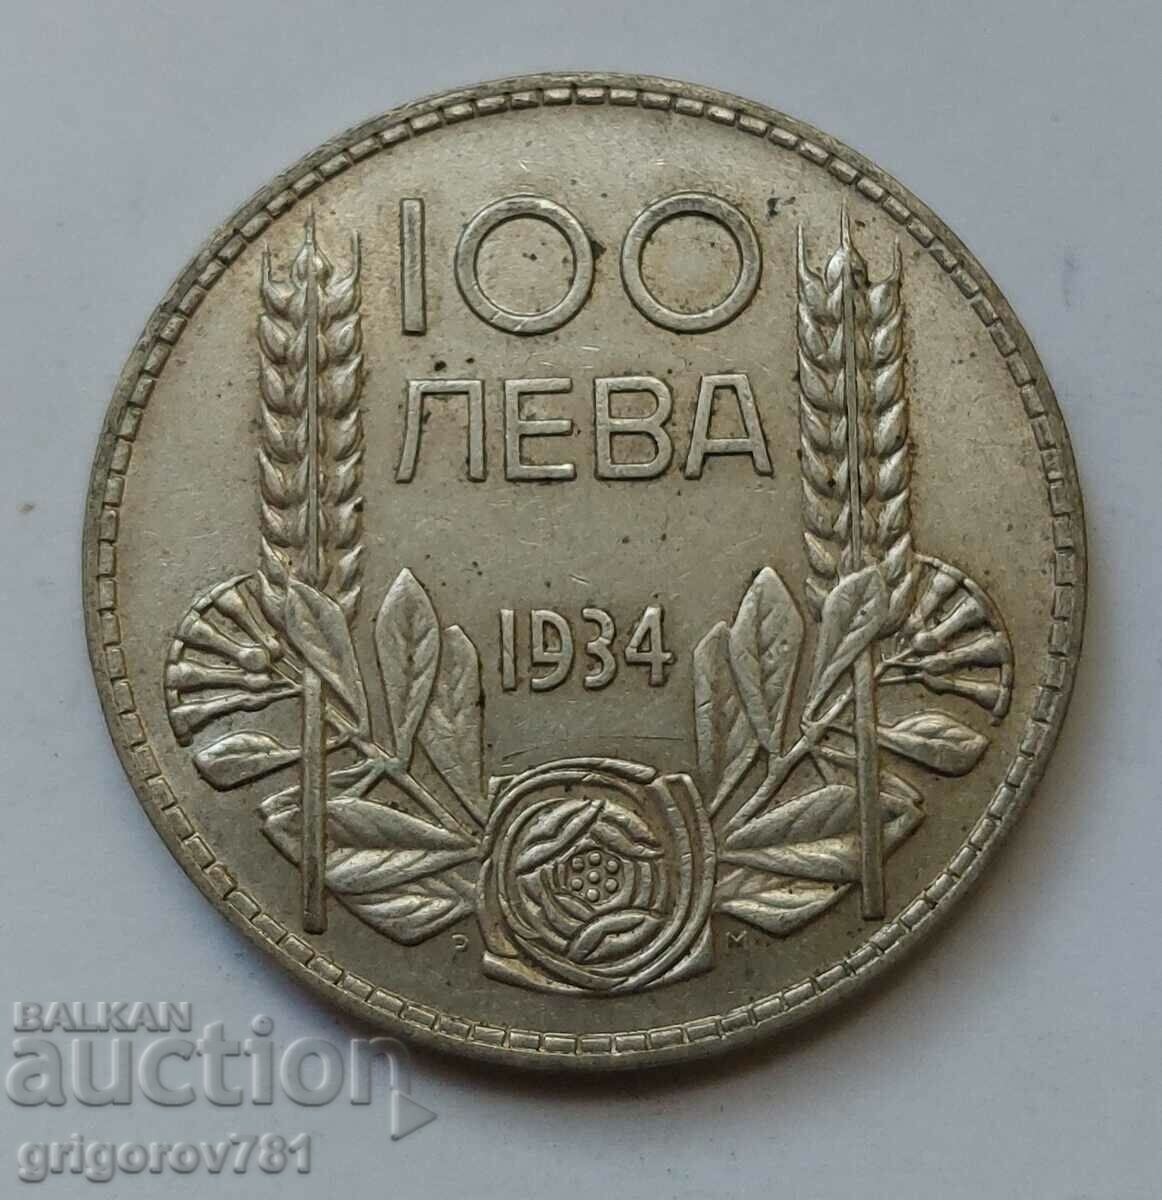 100 leva argint Bulgaria 1934 - monedă de argint #100